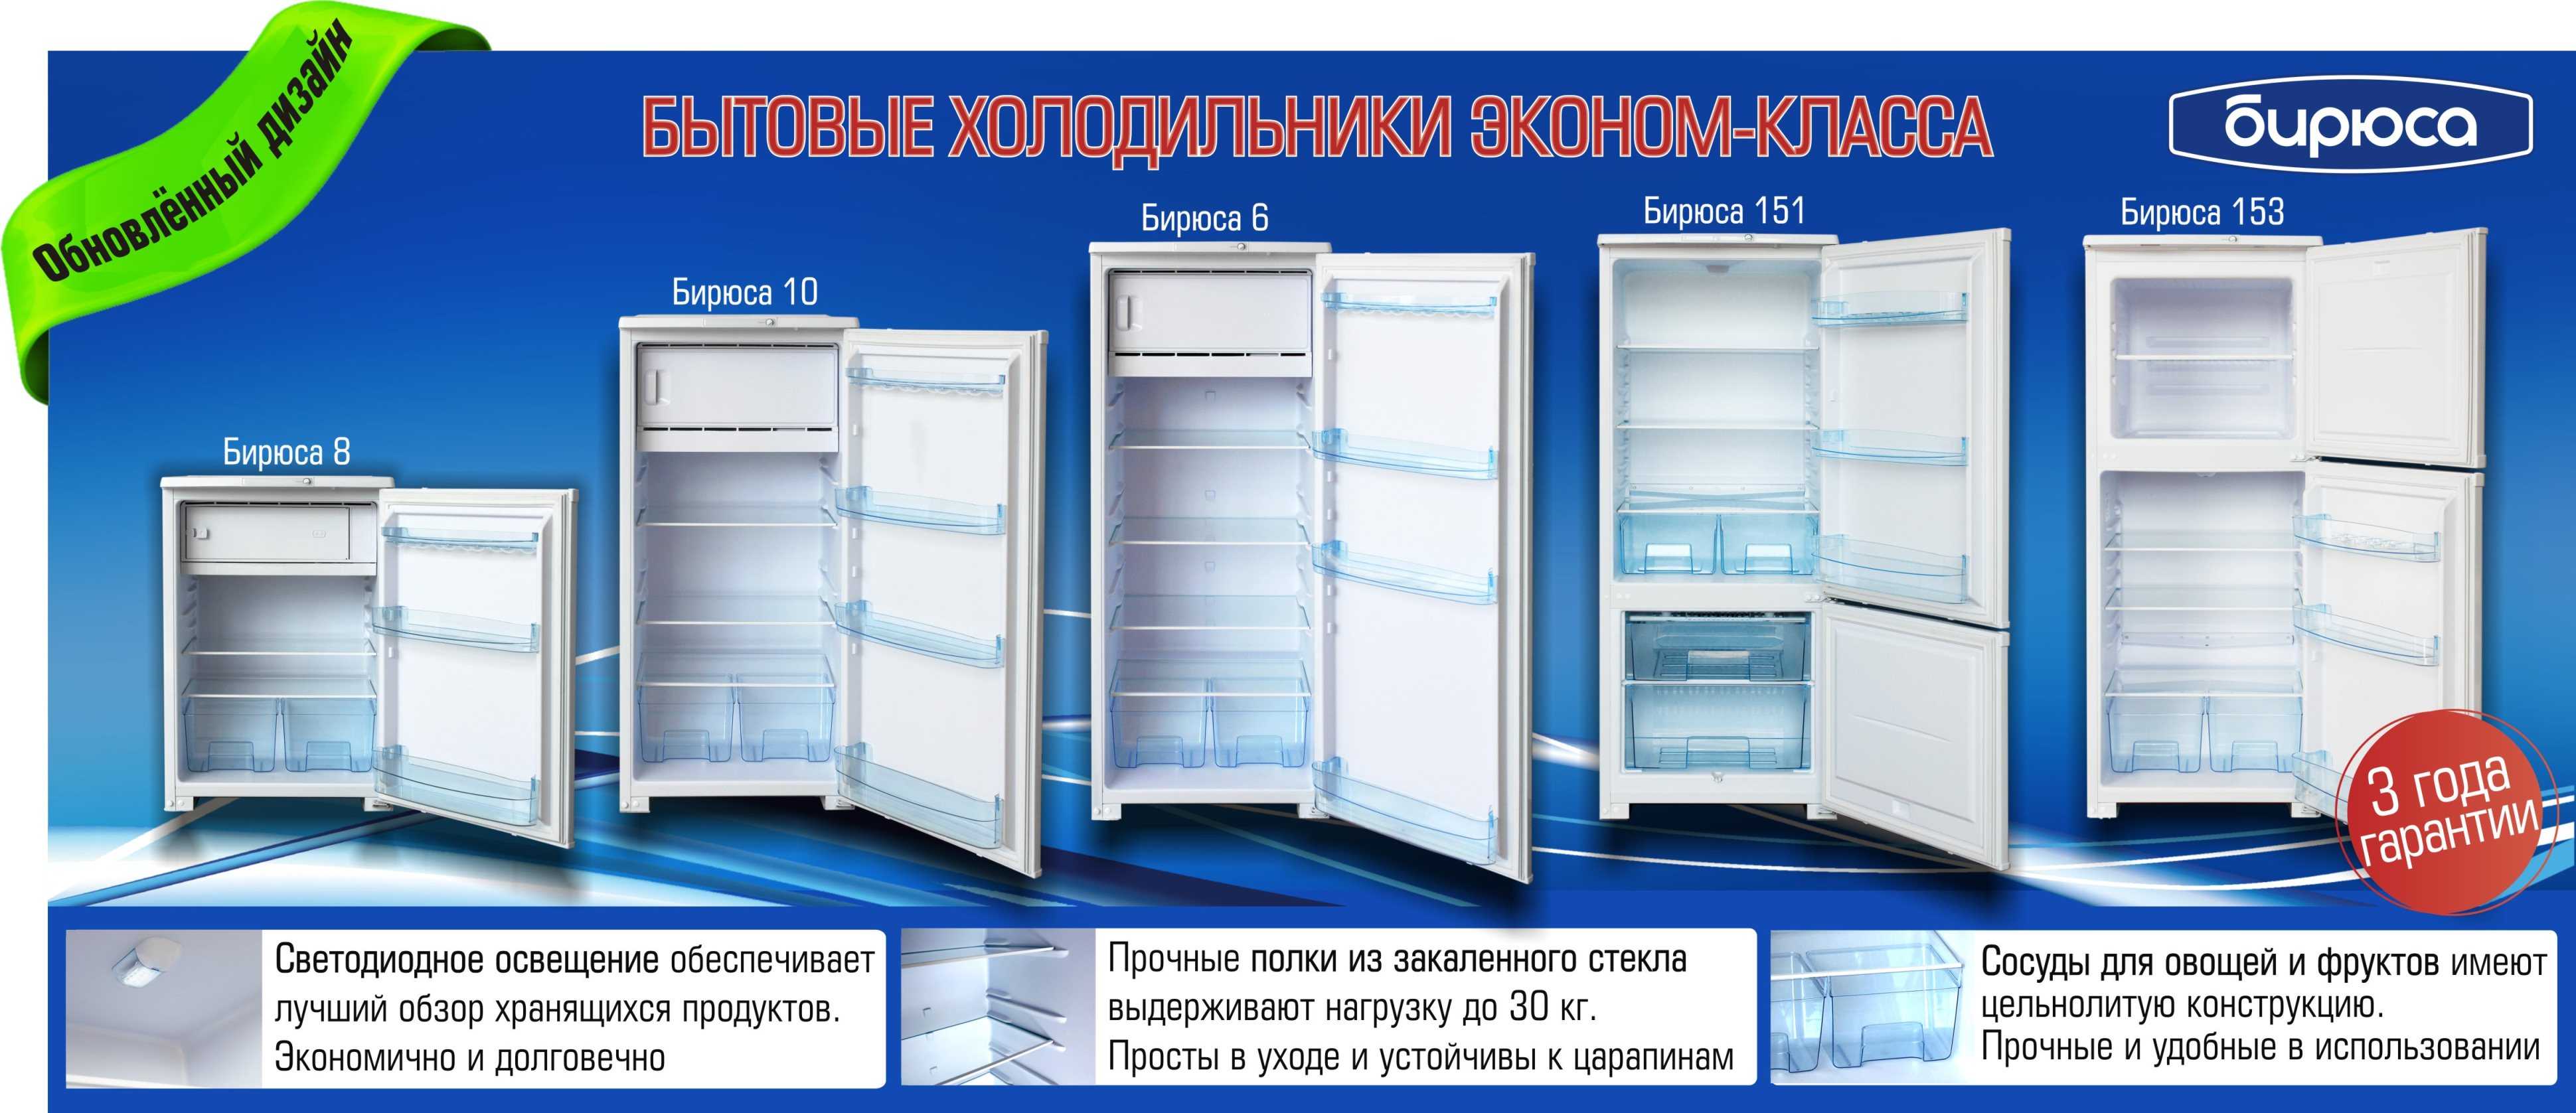 Бирюса 120 — обзор самого народного холодильника – отзыв на migreview.com